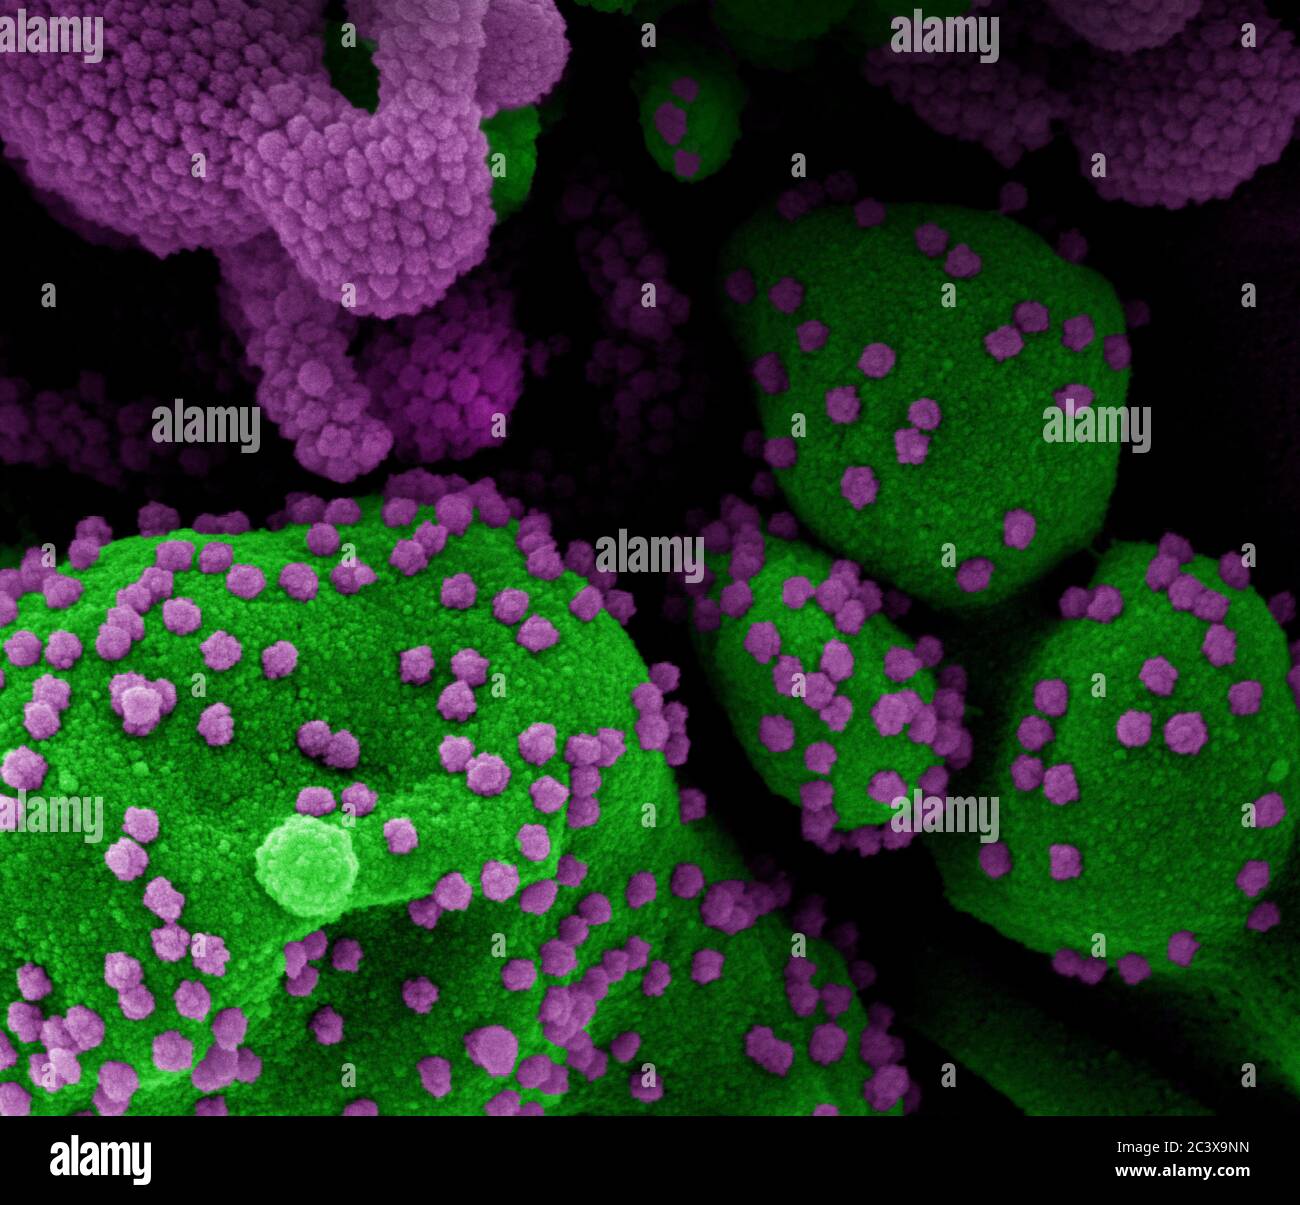 Novel Coronavirus SARS-COV-2 micrografia elettronica a scansione colored di una cellula apoptotica (verde) fortemente infettata con particelle di virus SARS-COV-2 (viola), isolata da un campione di paziente. Immagine presso il NIAID Integrated Research Facility (IRF) di Fort Detrick, Maryland. Foto Stock